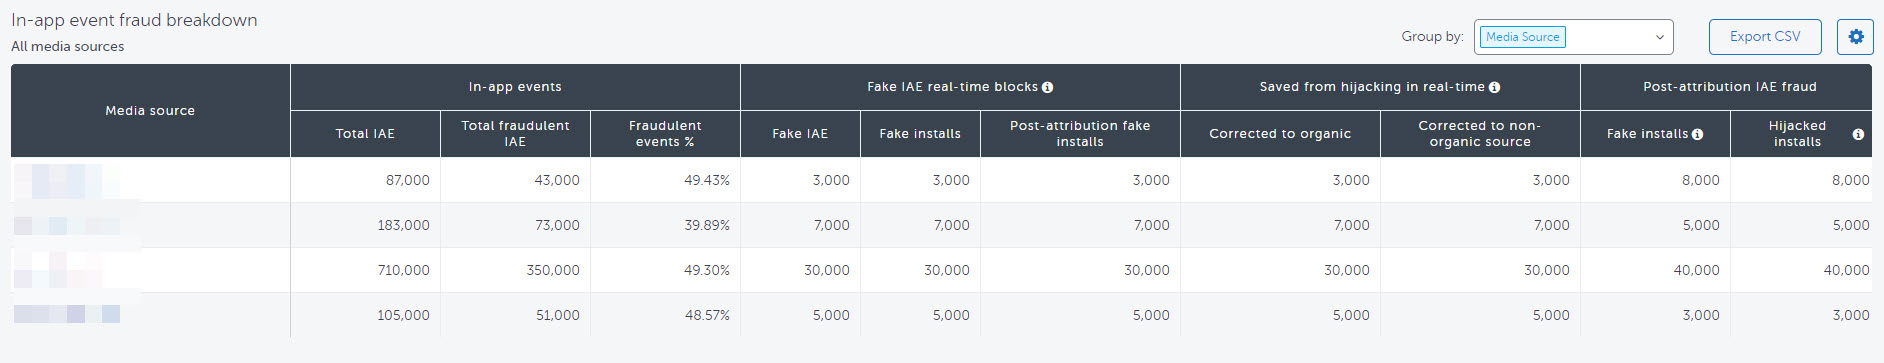 IAE_fraud_table.jpg